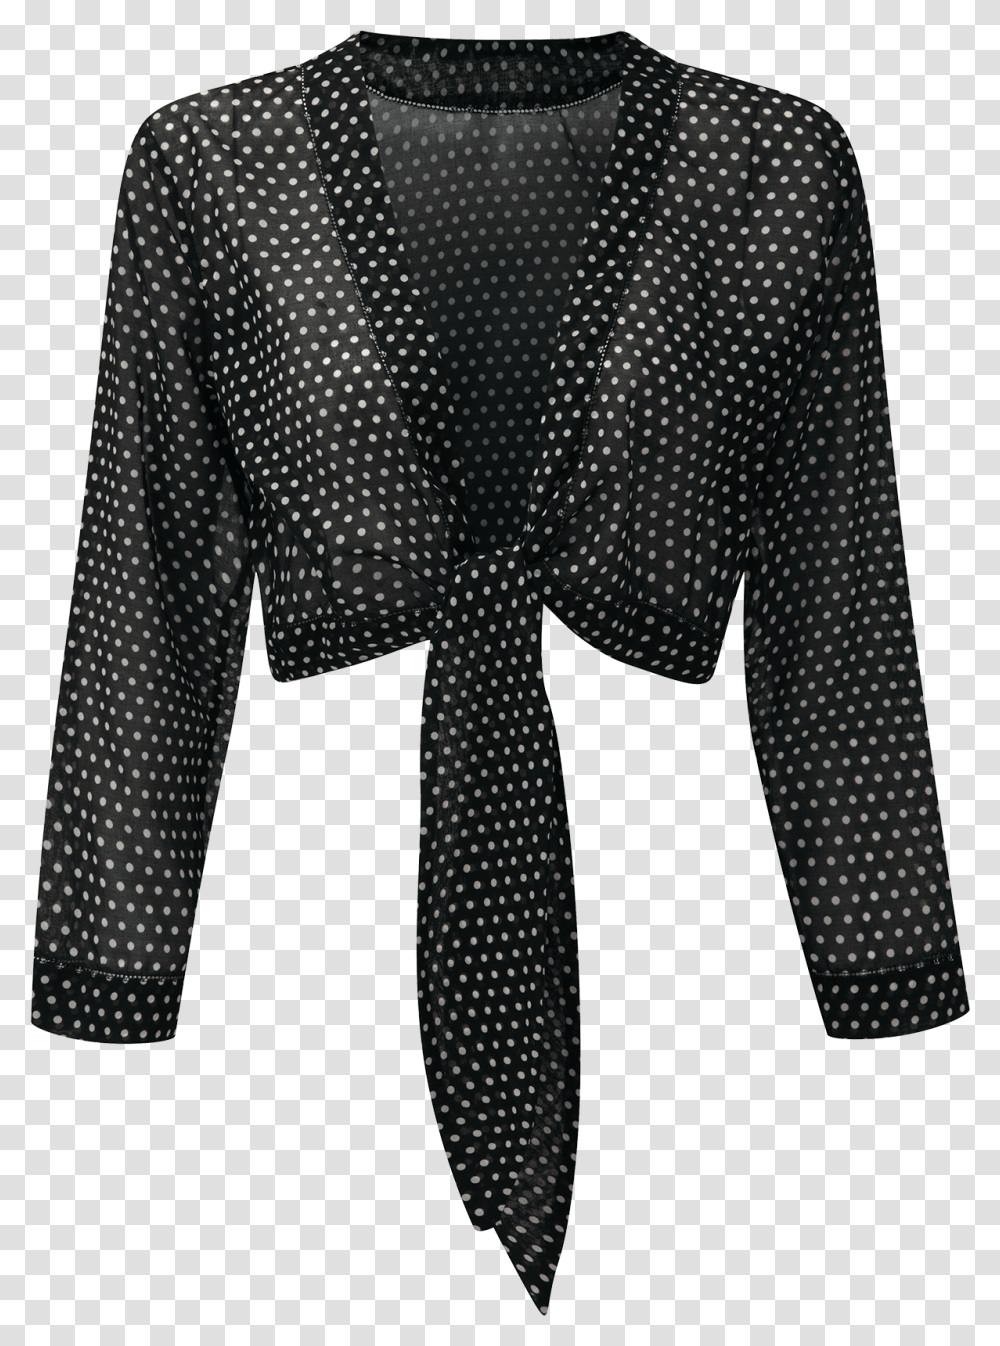 Clip Art Black Cotton Blouse Lisa Marie Fernandez Swimsuit, Armor, Chain Mail, Person, Human Transparent Png